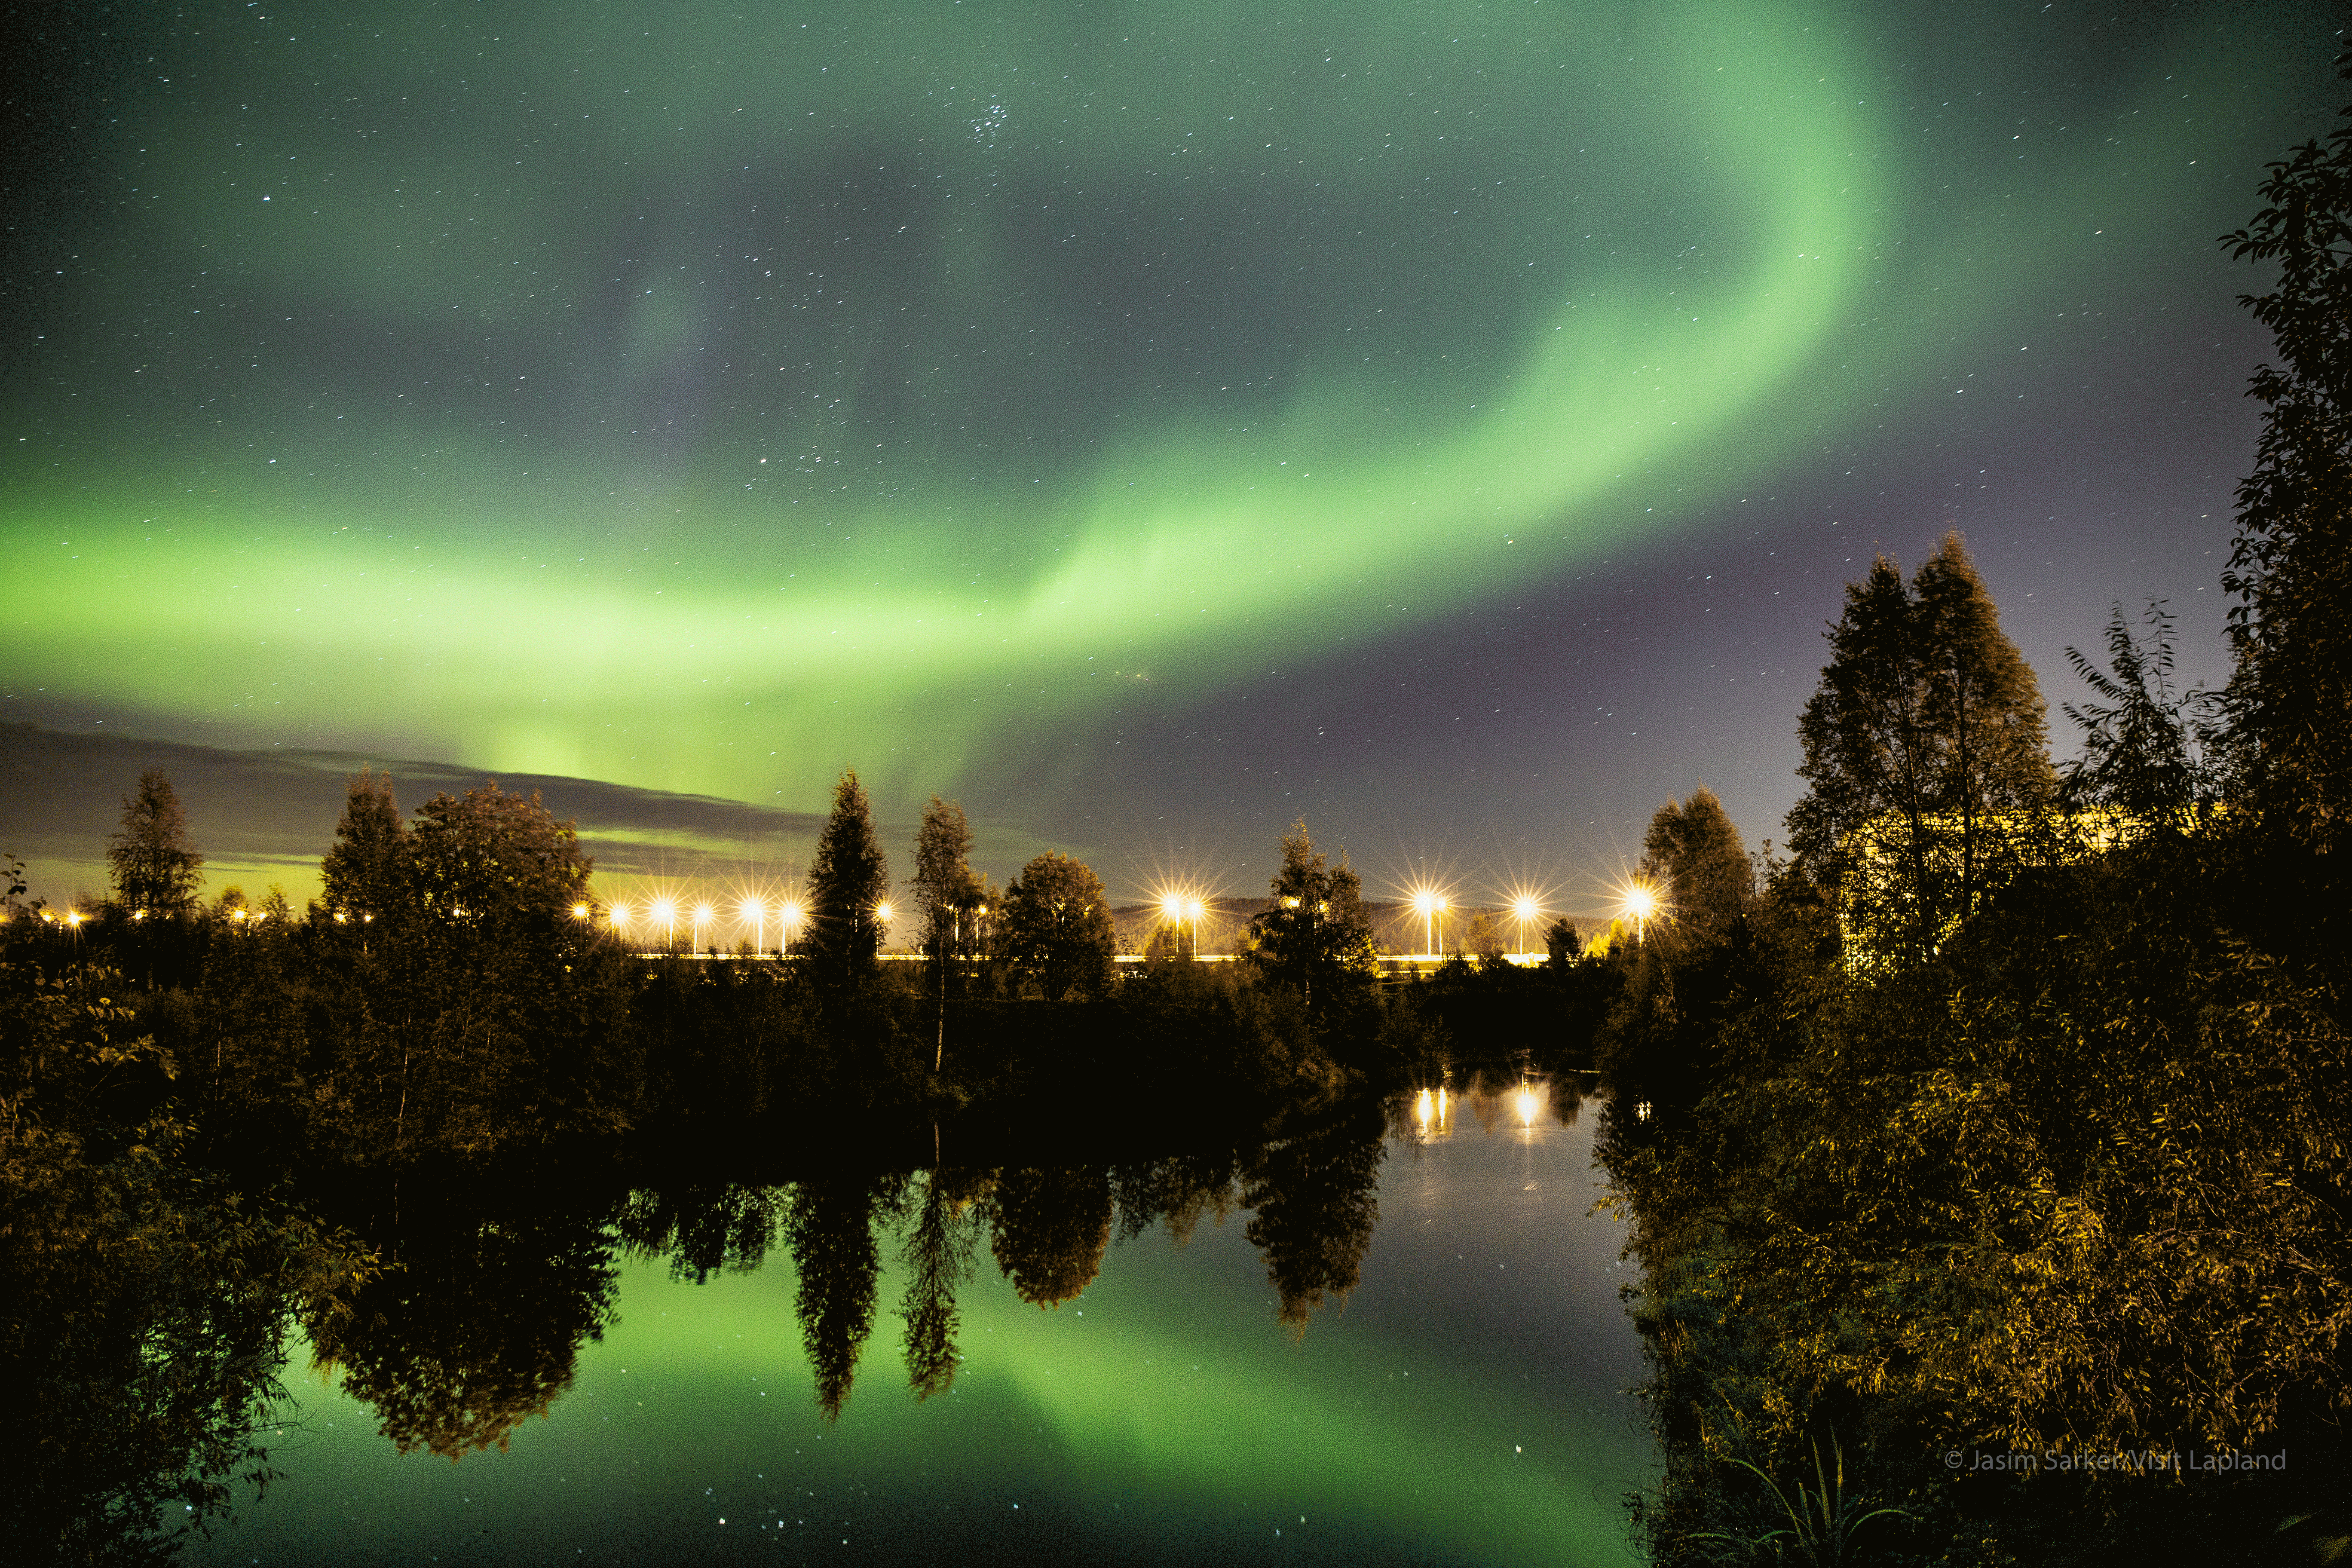 Magical aurora in autumn Lapland Finland by Jasim Sarker -Visit Lapland